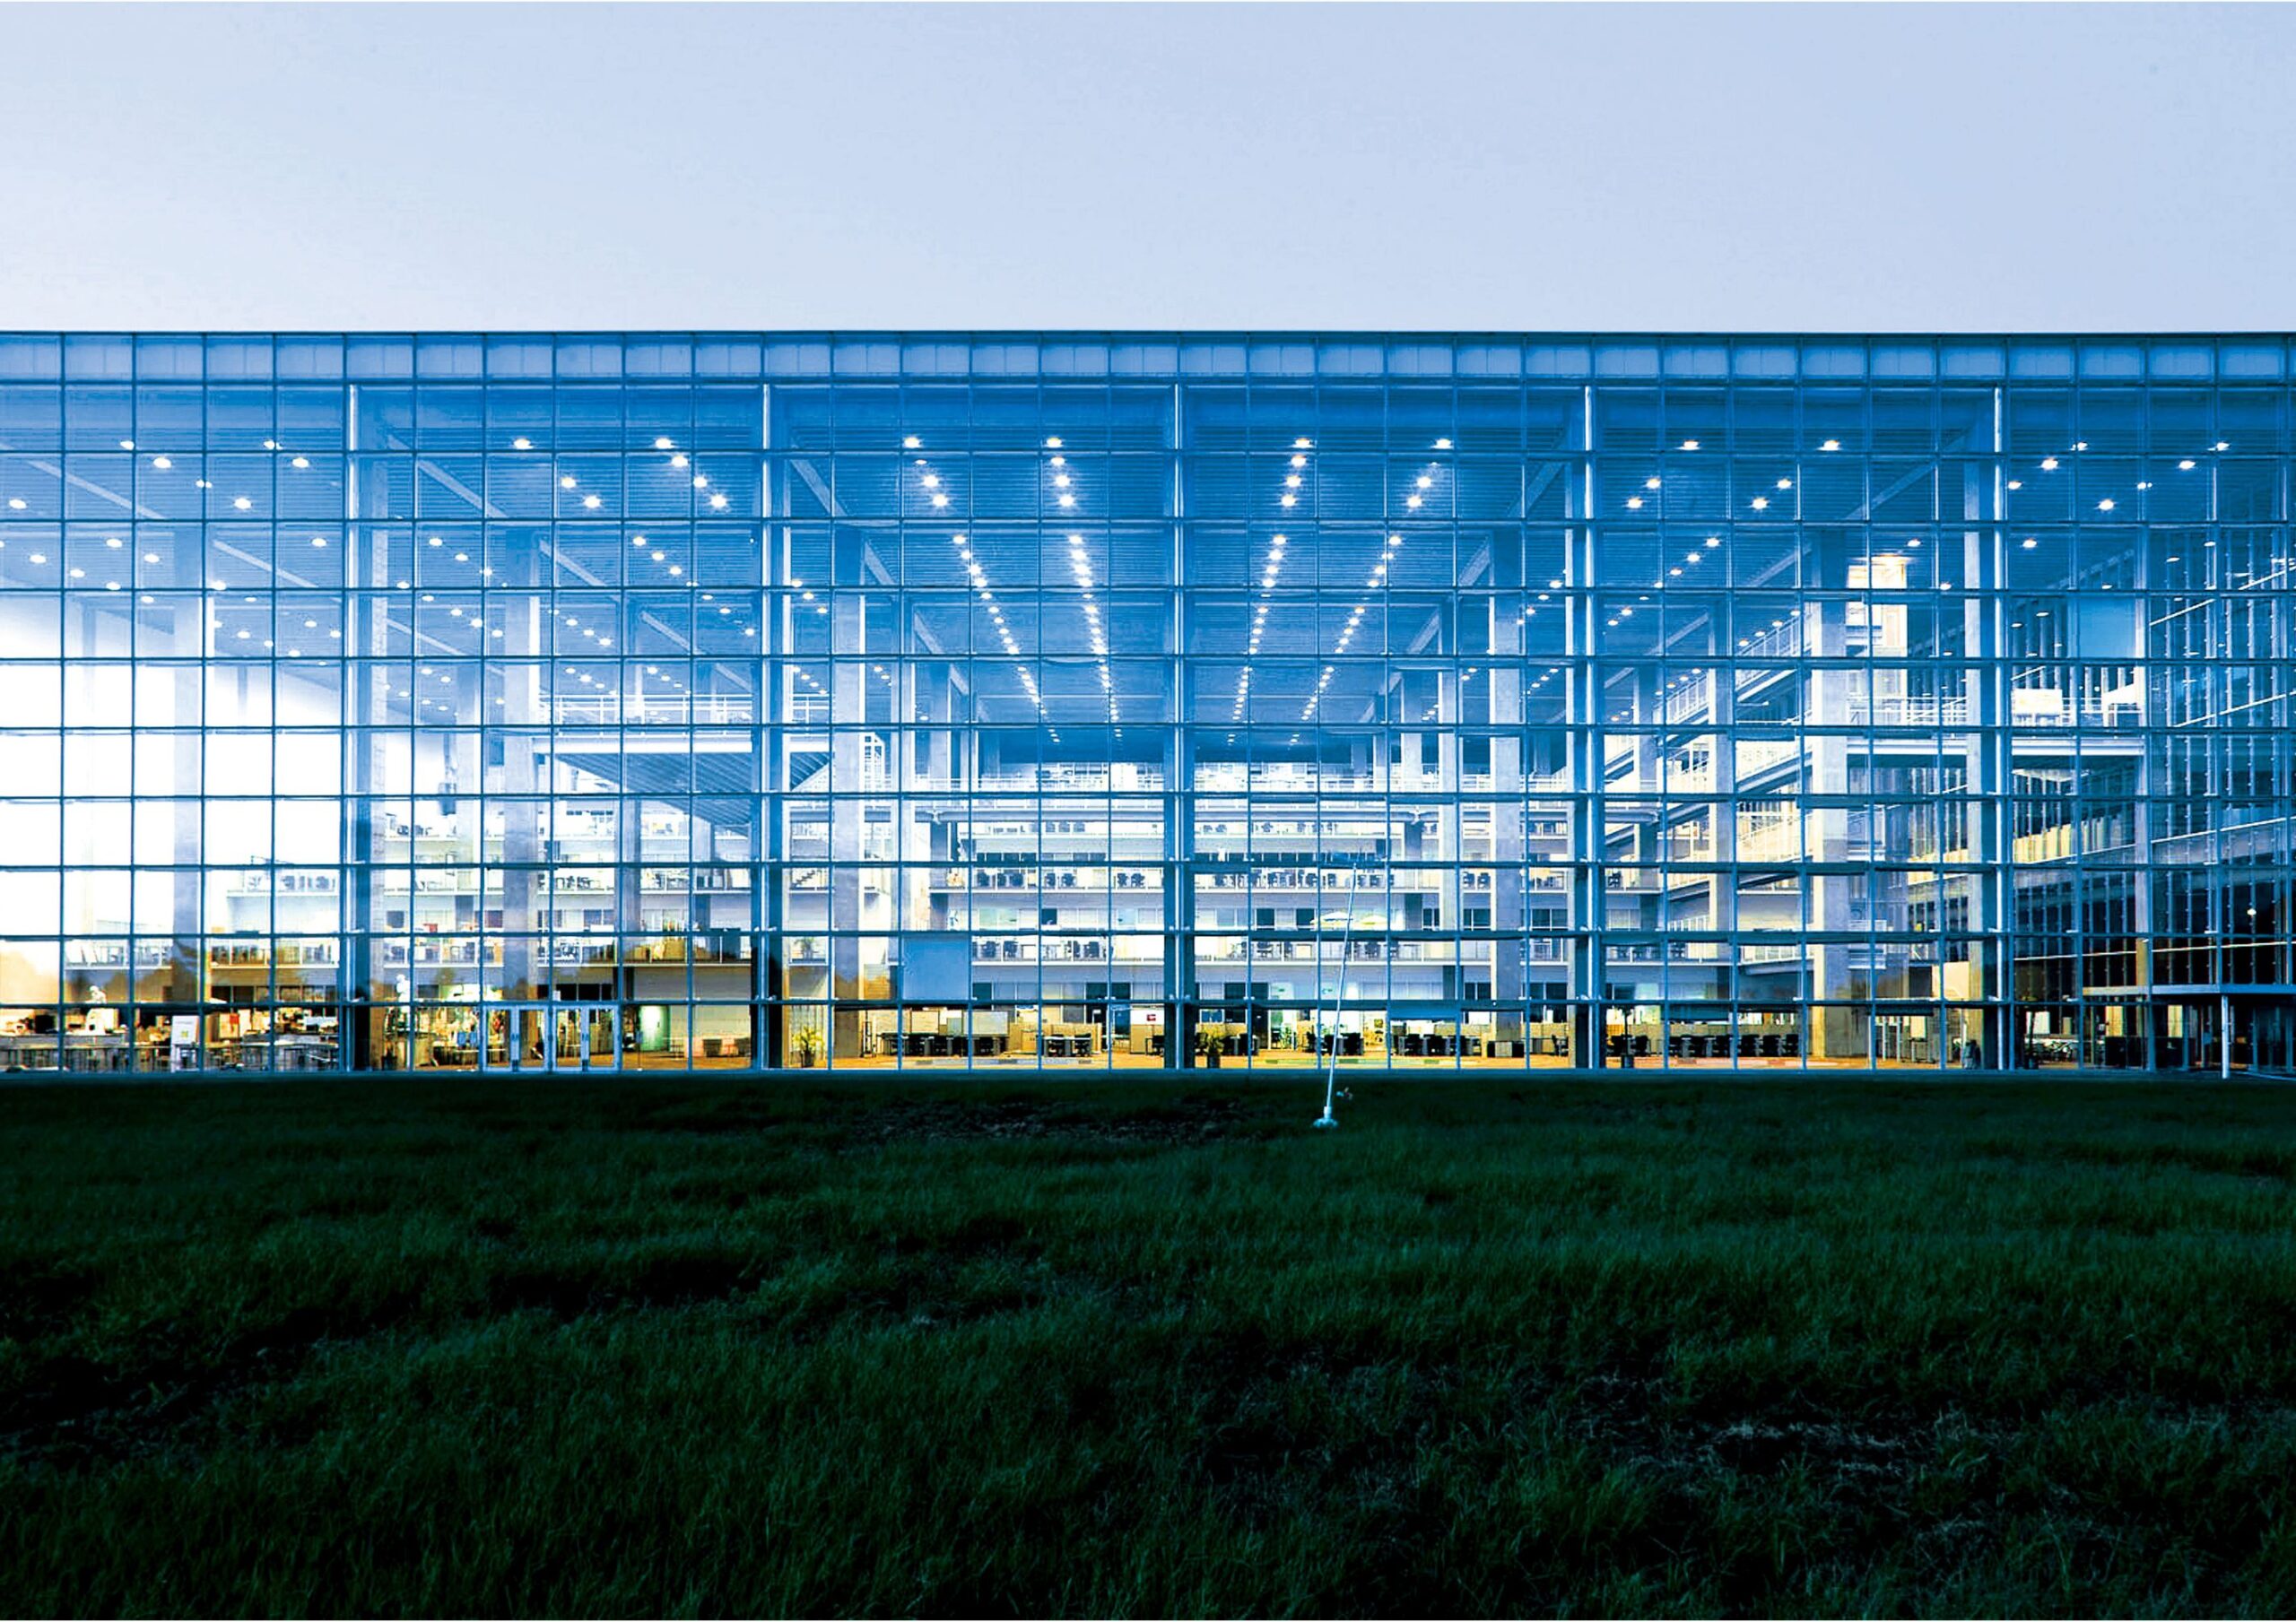 Future University of Hakodate by Riken Yamamoto, Pritzker Architecture Prize awardee.